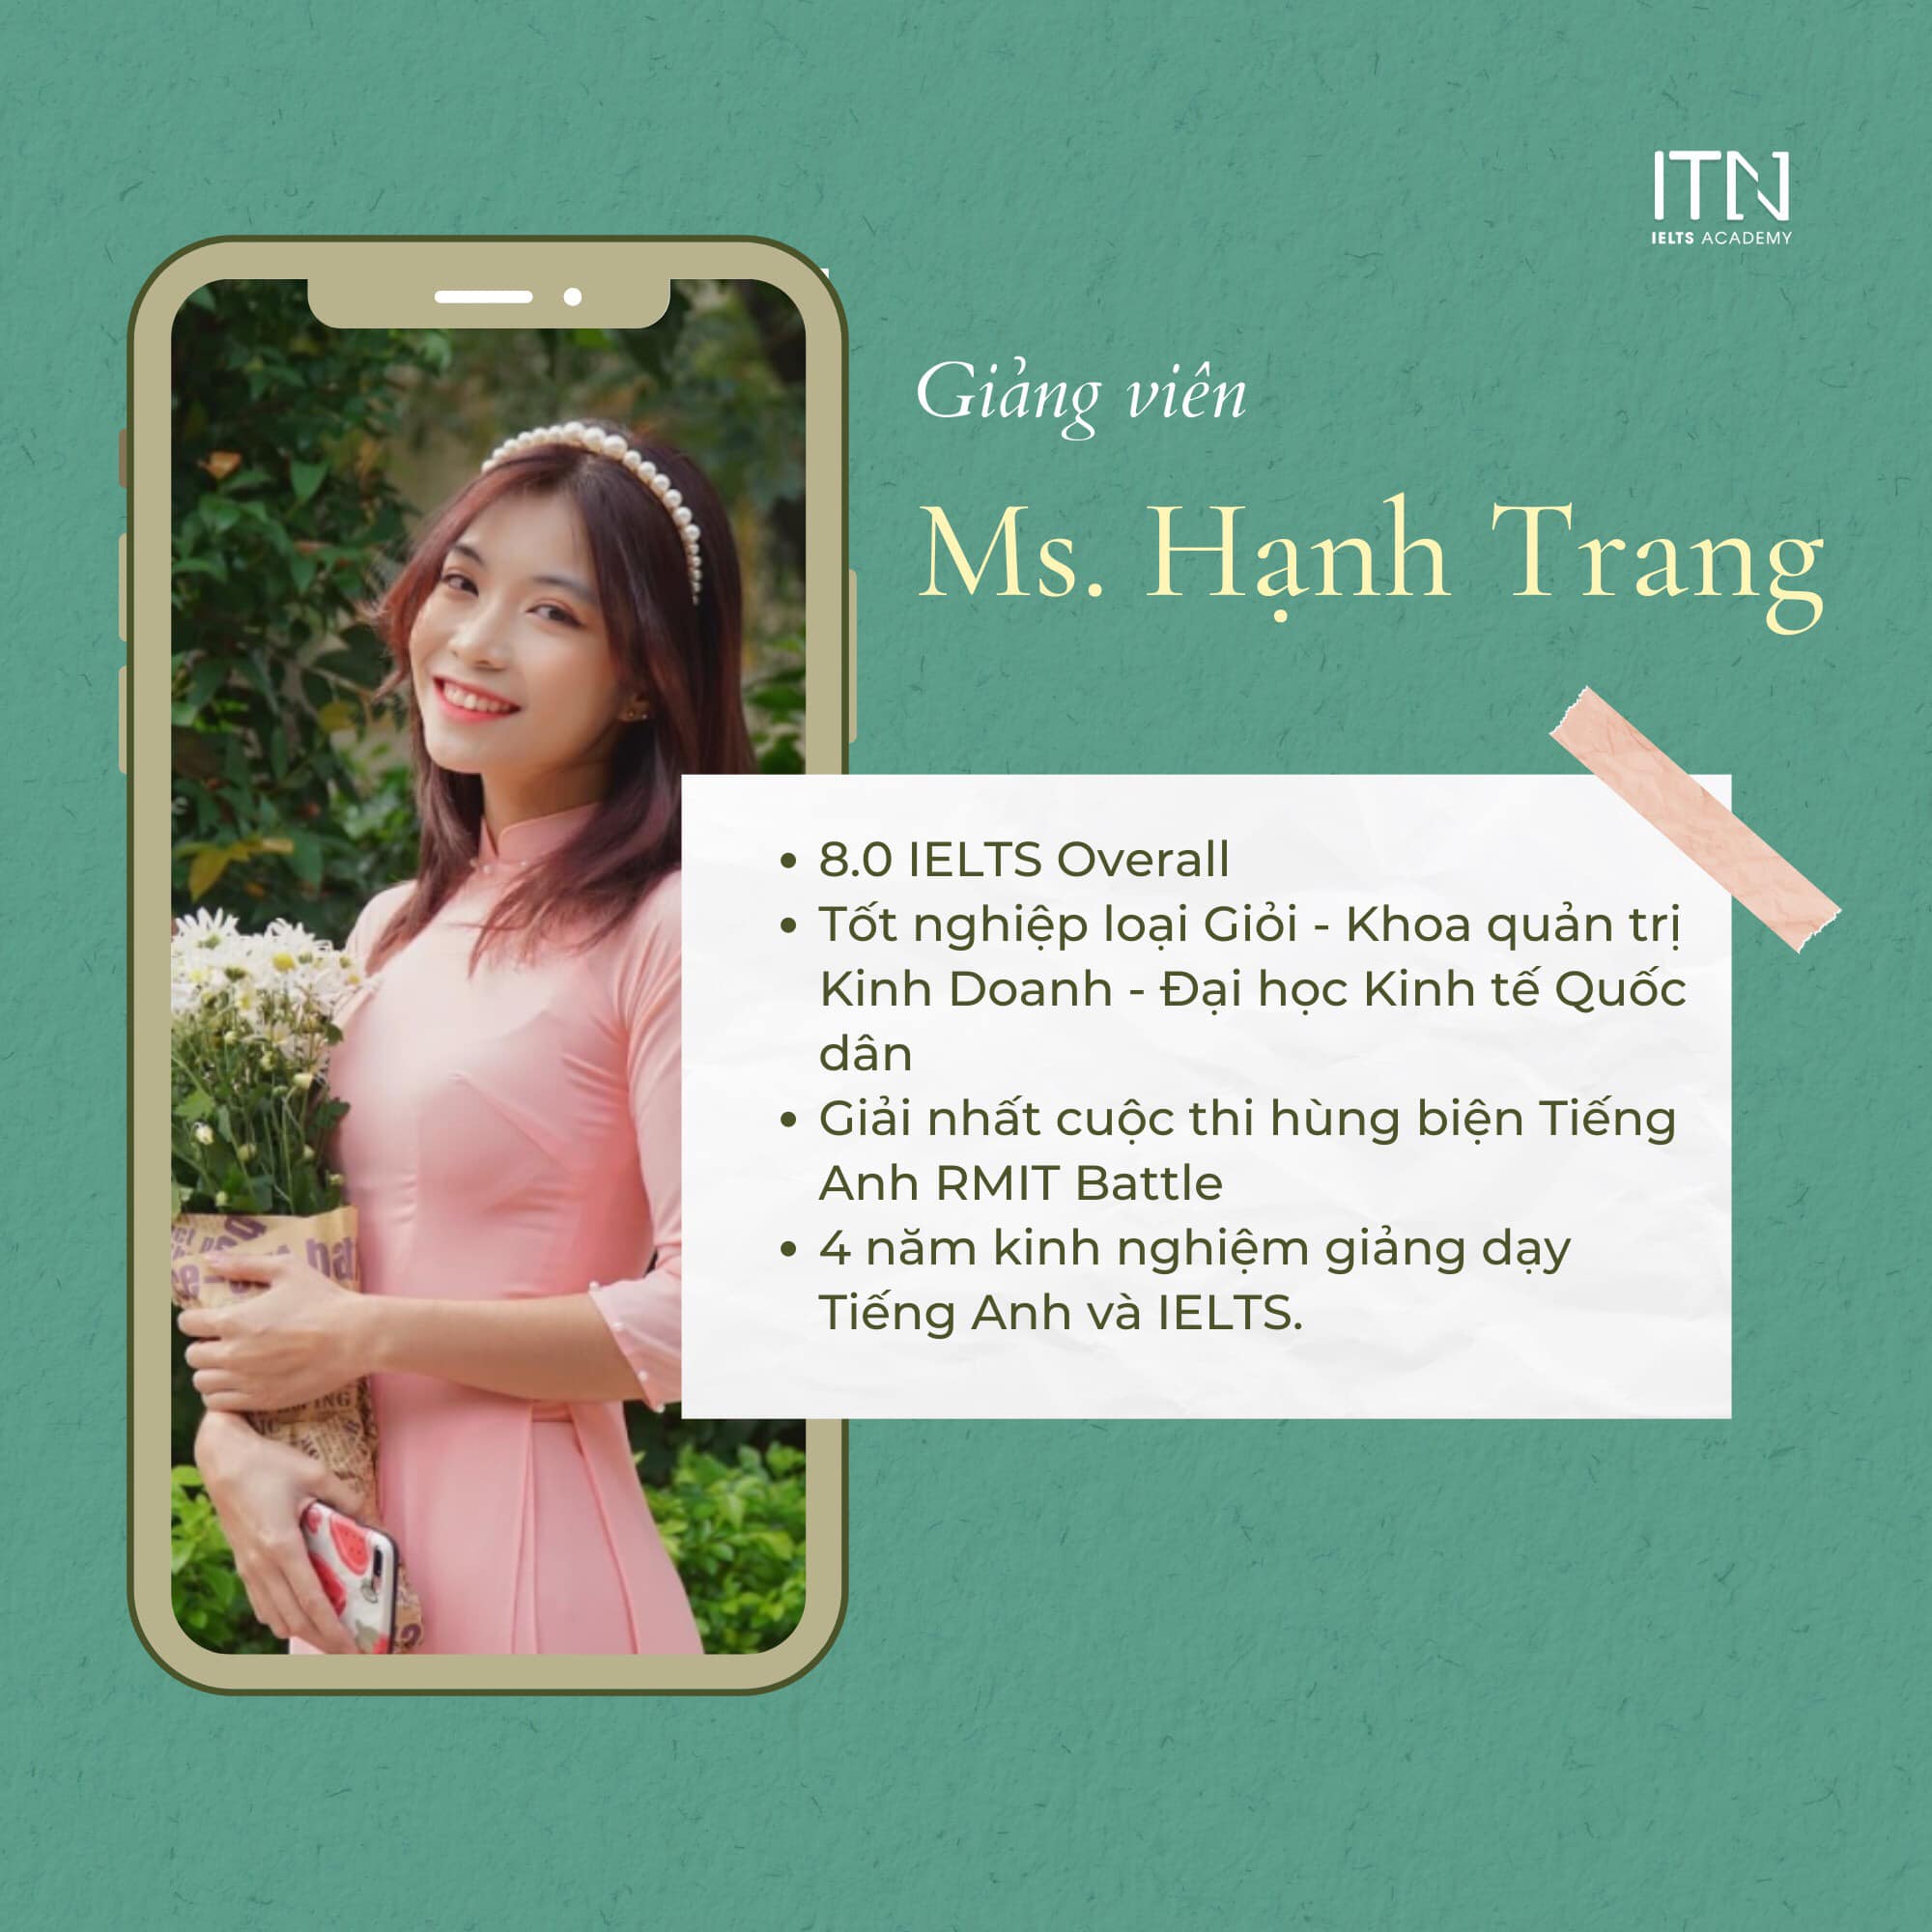 Ms. Hạnh Trang